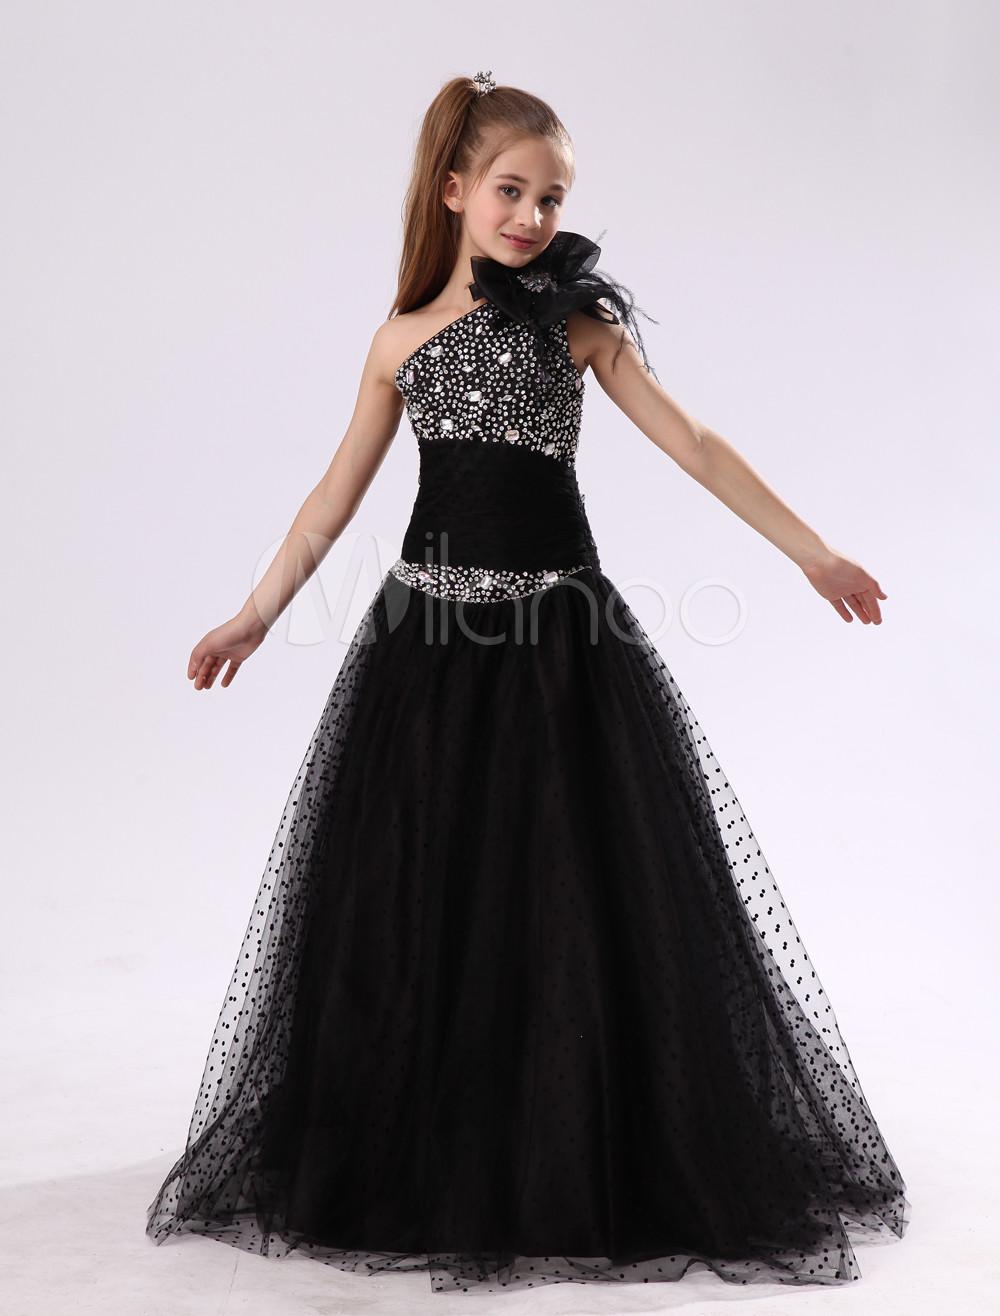 Foto Bonito vestido negro gasa de un solo hombro vestido de flores niña de arco foto 797526